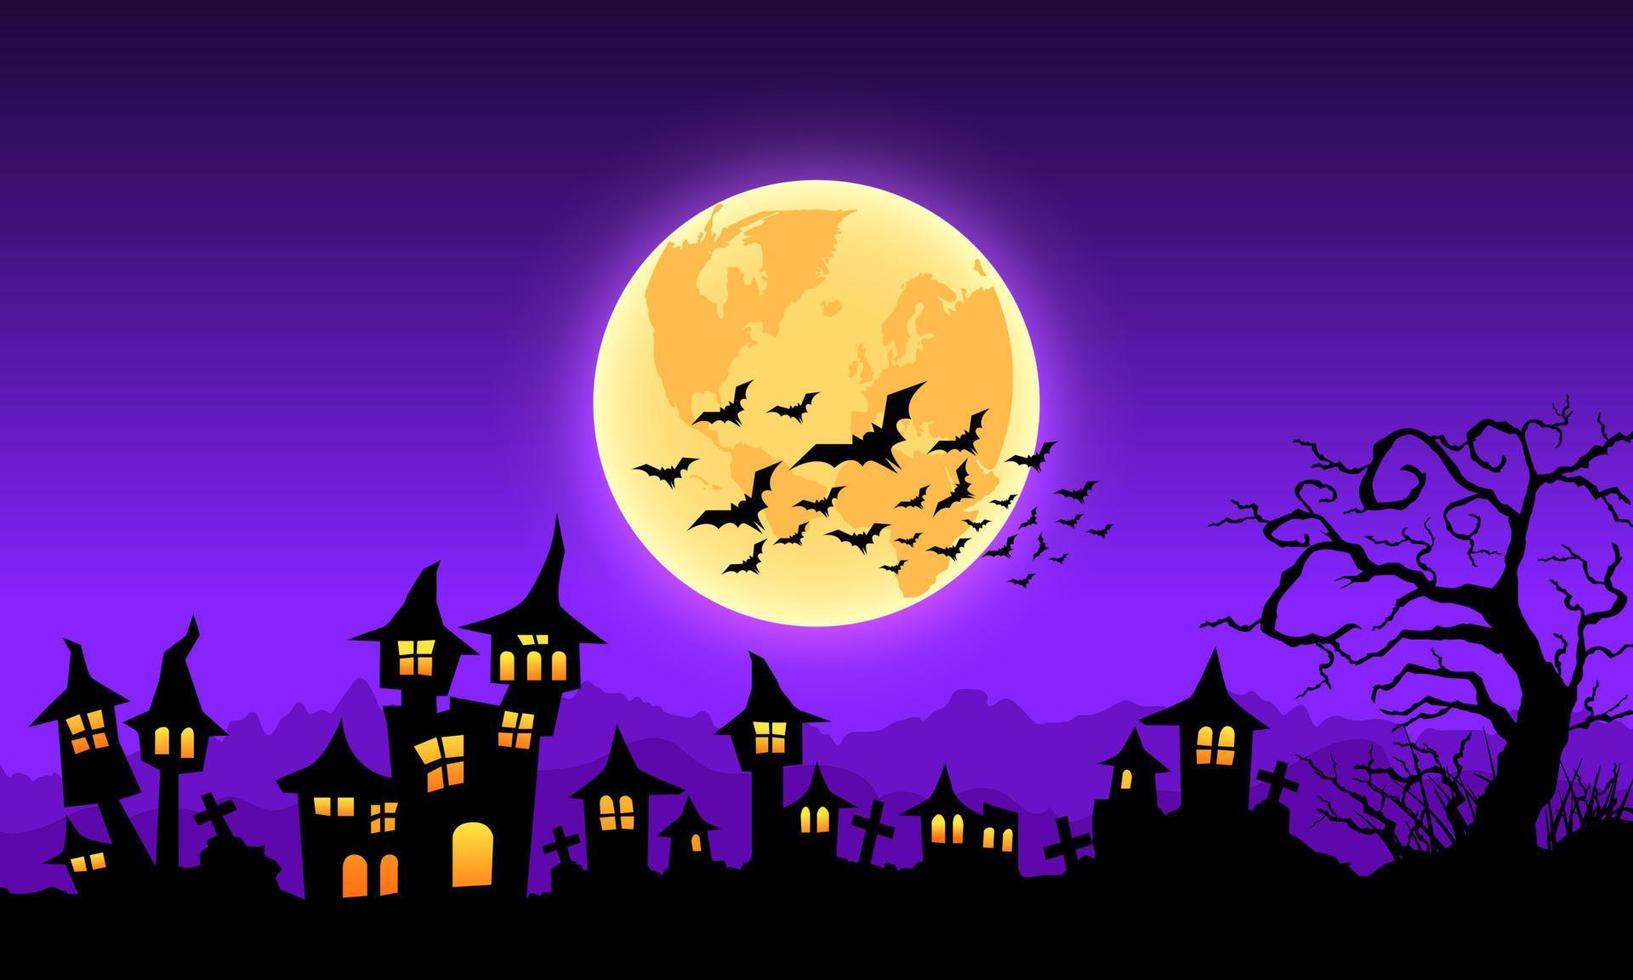 mystérieux fond d'halloween dégradé violet, pleine lune, maison hantée et chauves-souris. vecteur